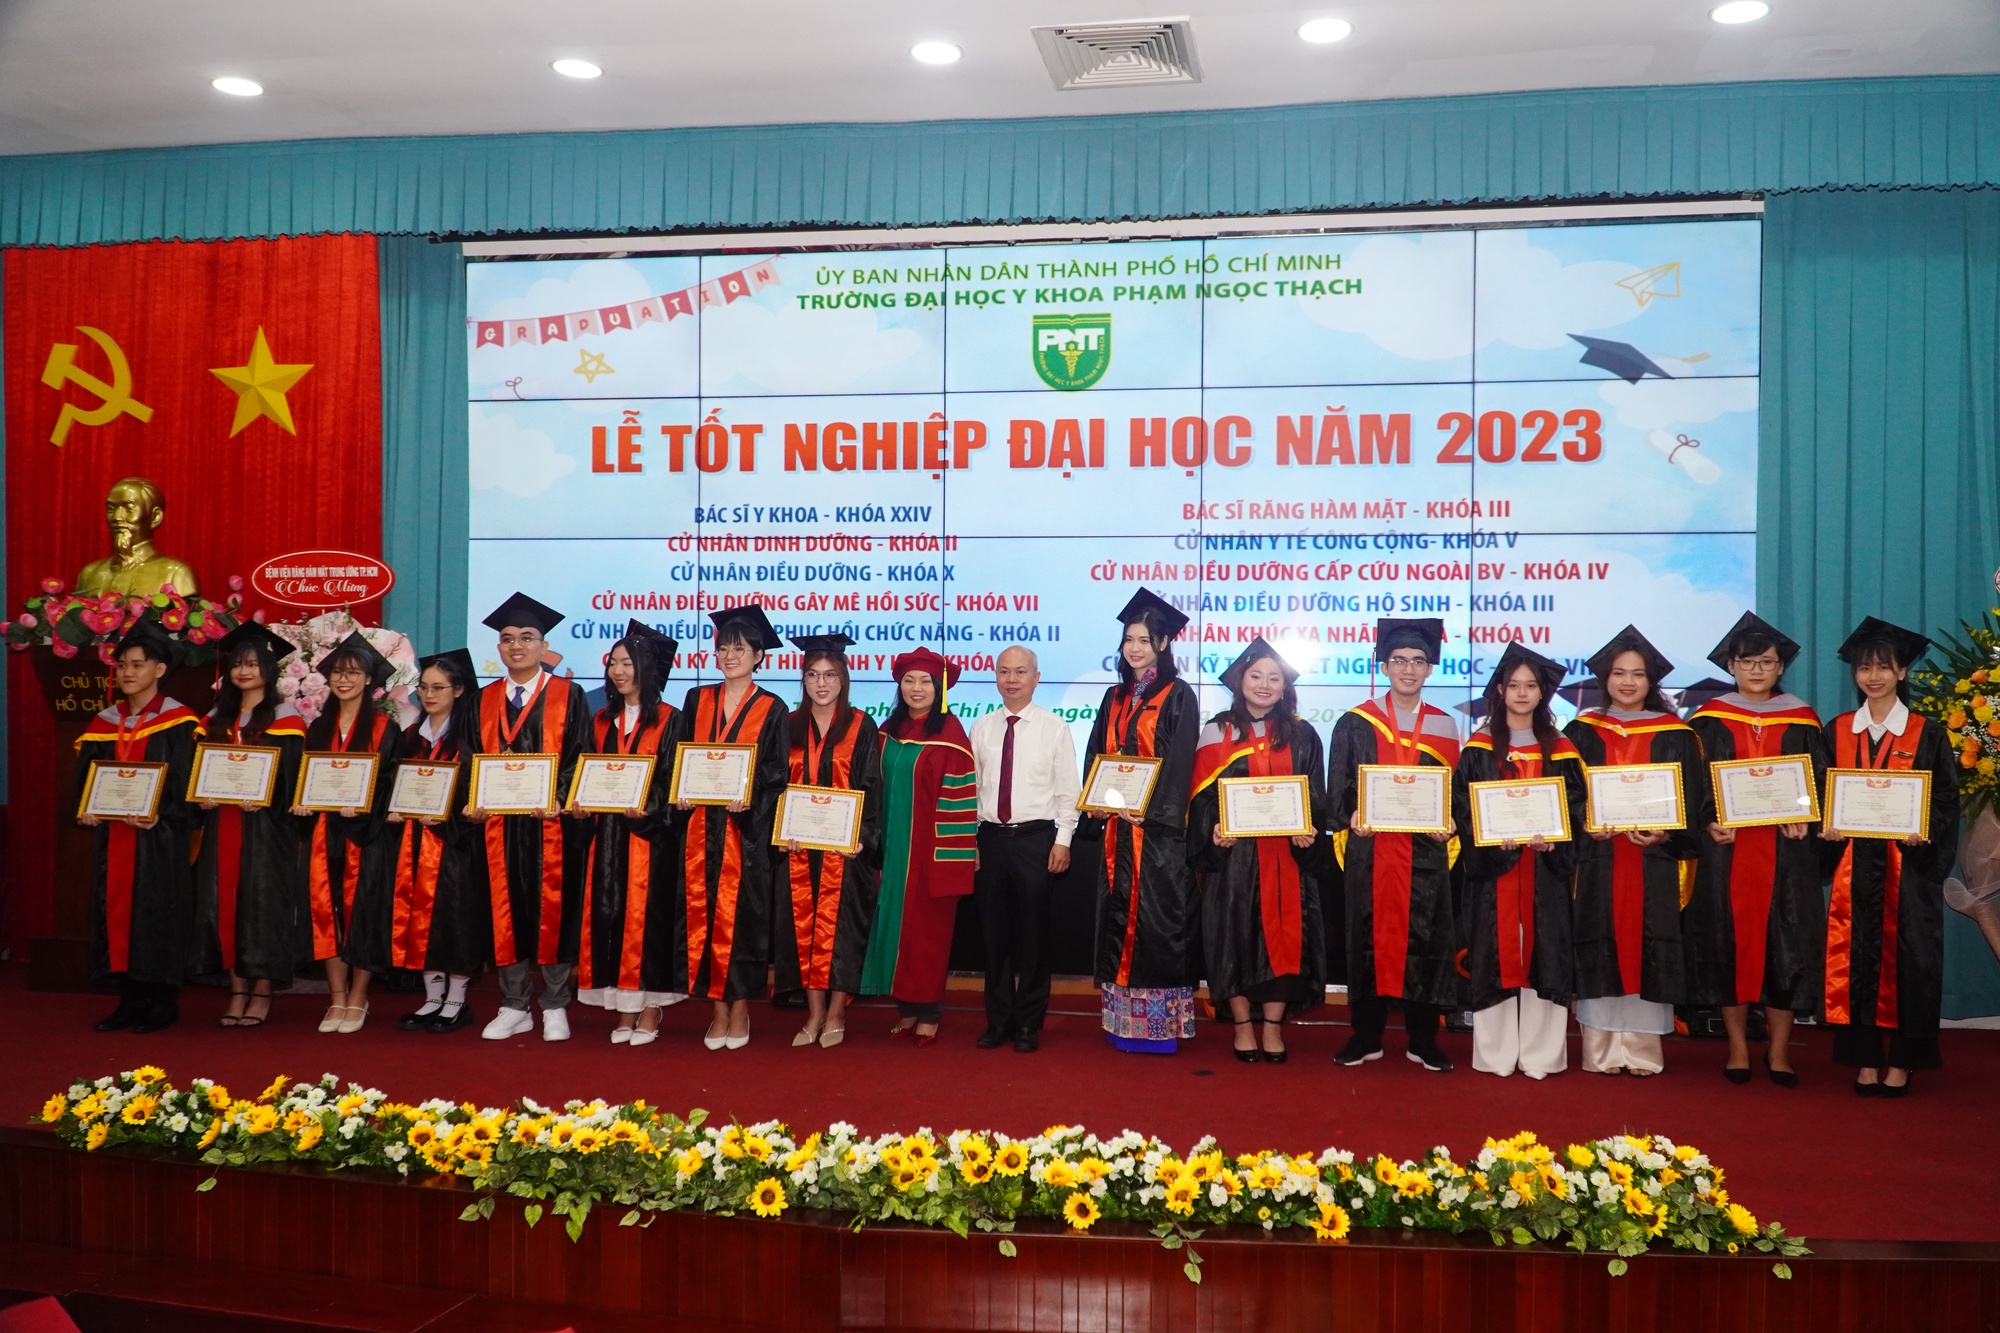 Trường ĐH Y khoa Phạm Ngọc Thạch làm lễ tốt nghiệp cho 1.202 sinh viên - Ảnh 5.